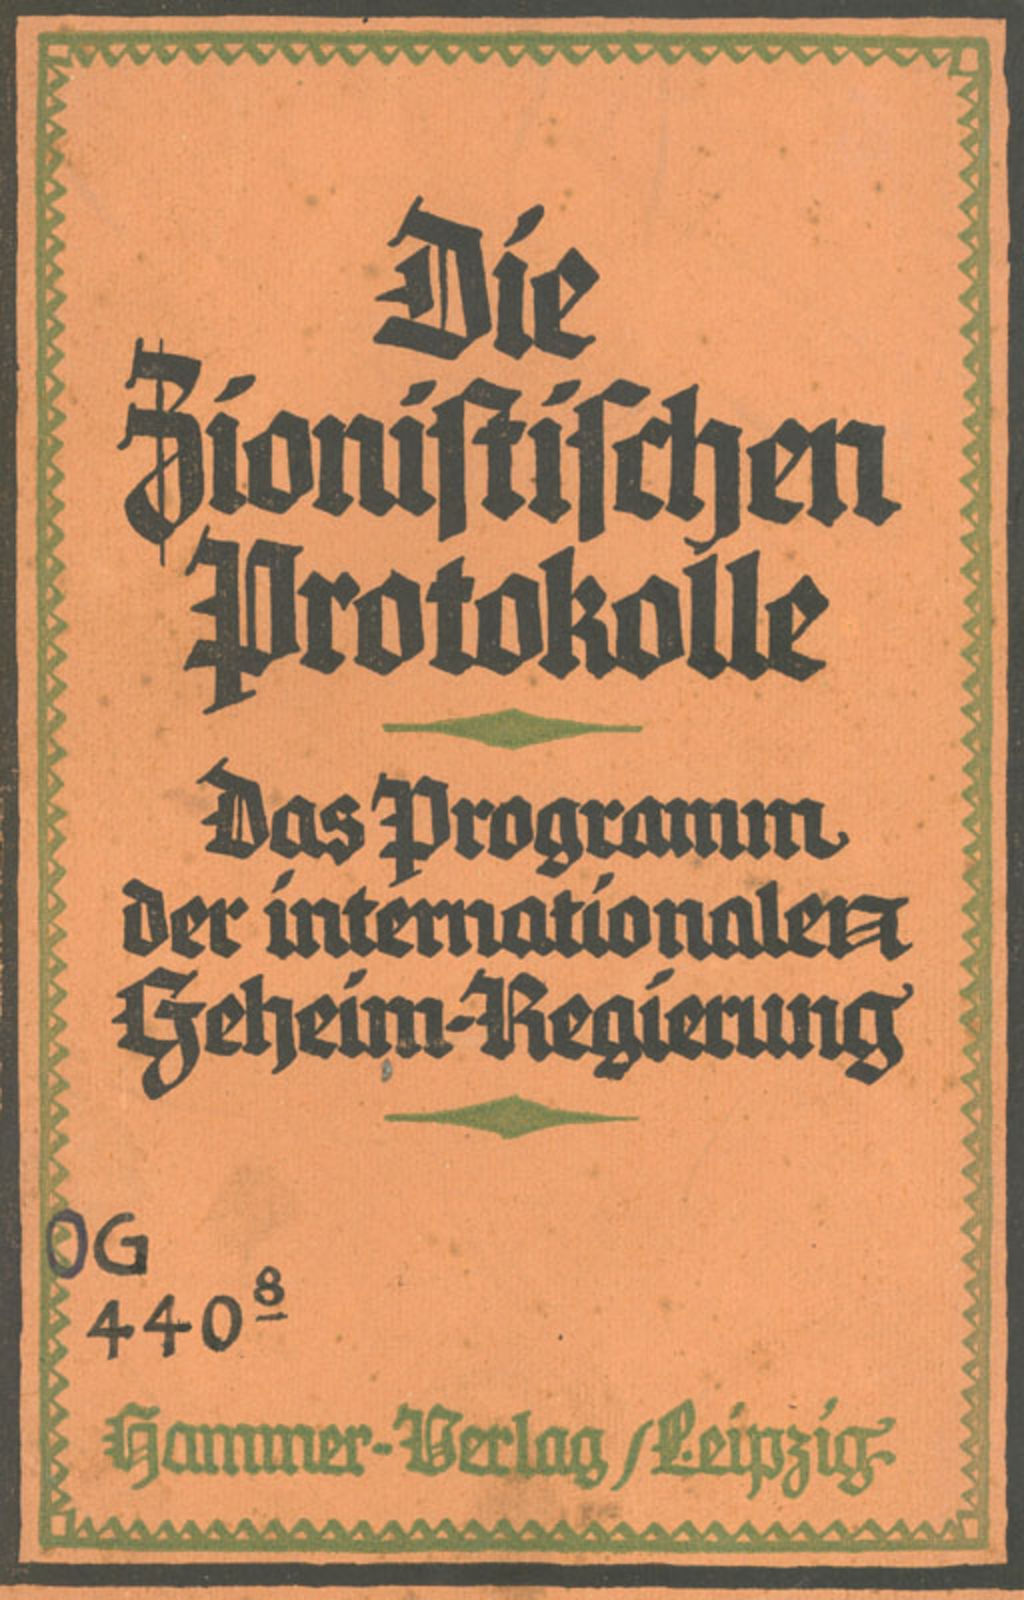 Buch: Fritsch, Theodor "Die zionistischen Protokolle. Das Programm der internationalen Geheim-Regierung", 1924